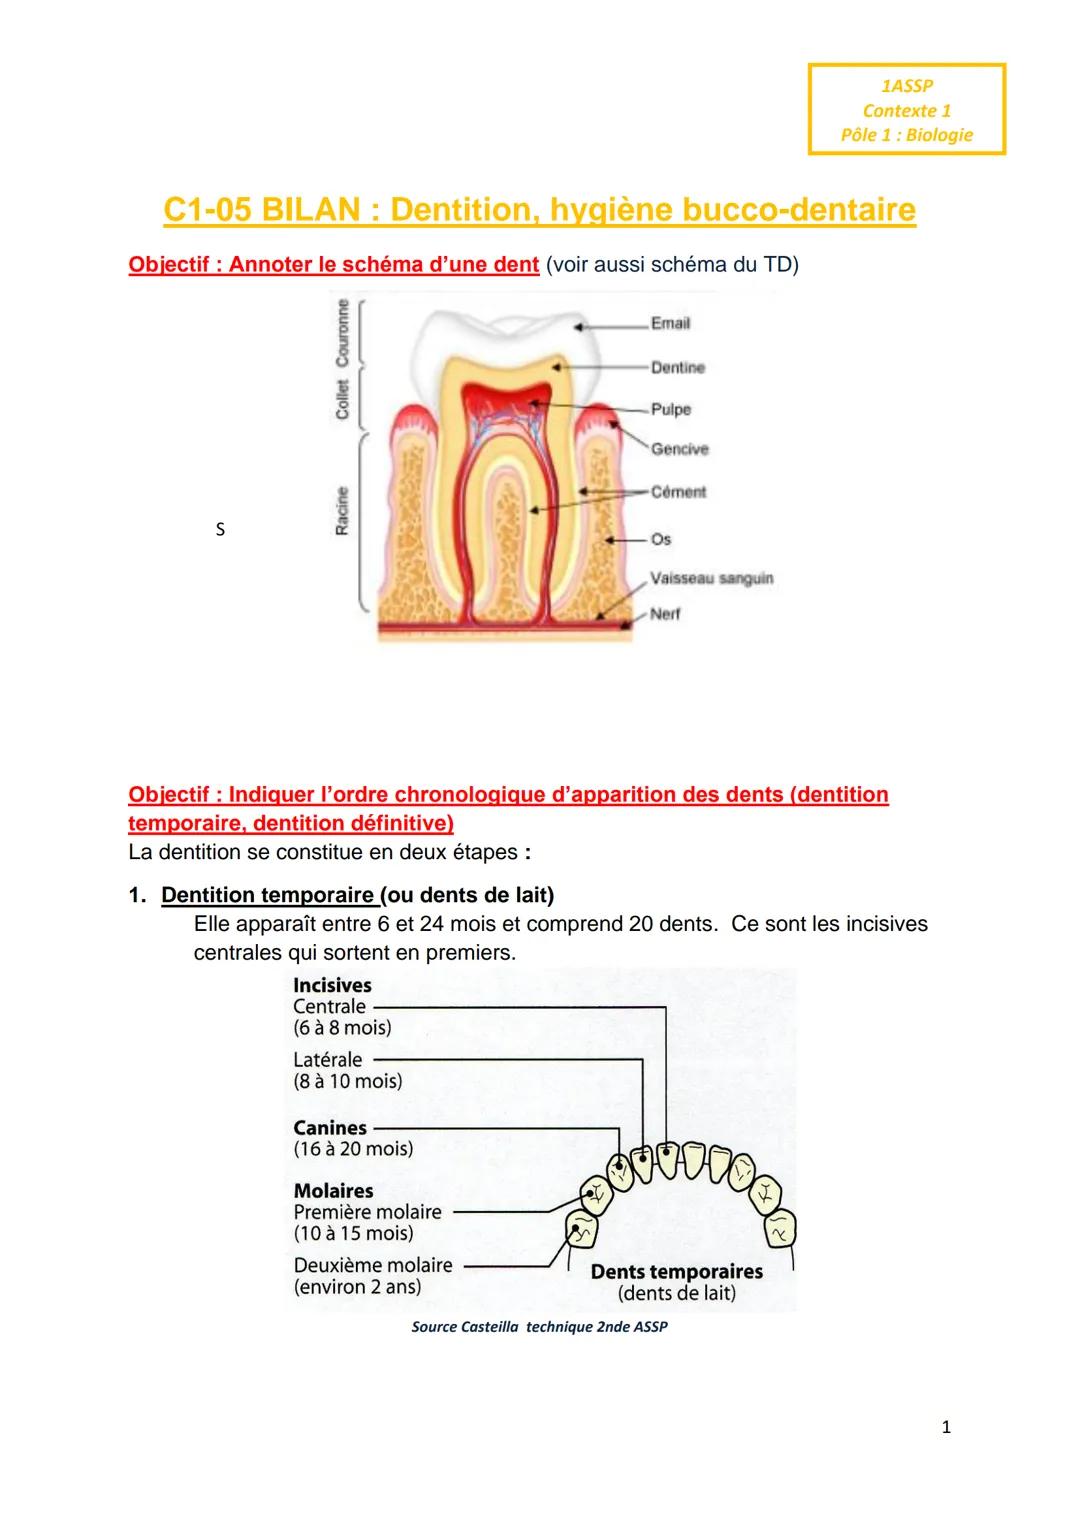 C1-05 BILAN: Dentition, hygiène bucco-dentaire
Objectif : Annoter le schéma d'une dent (voir aussi schéma du TD)
S
Collet Couronne
Racine
In